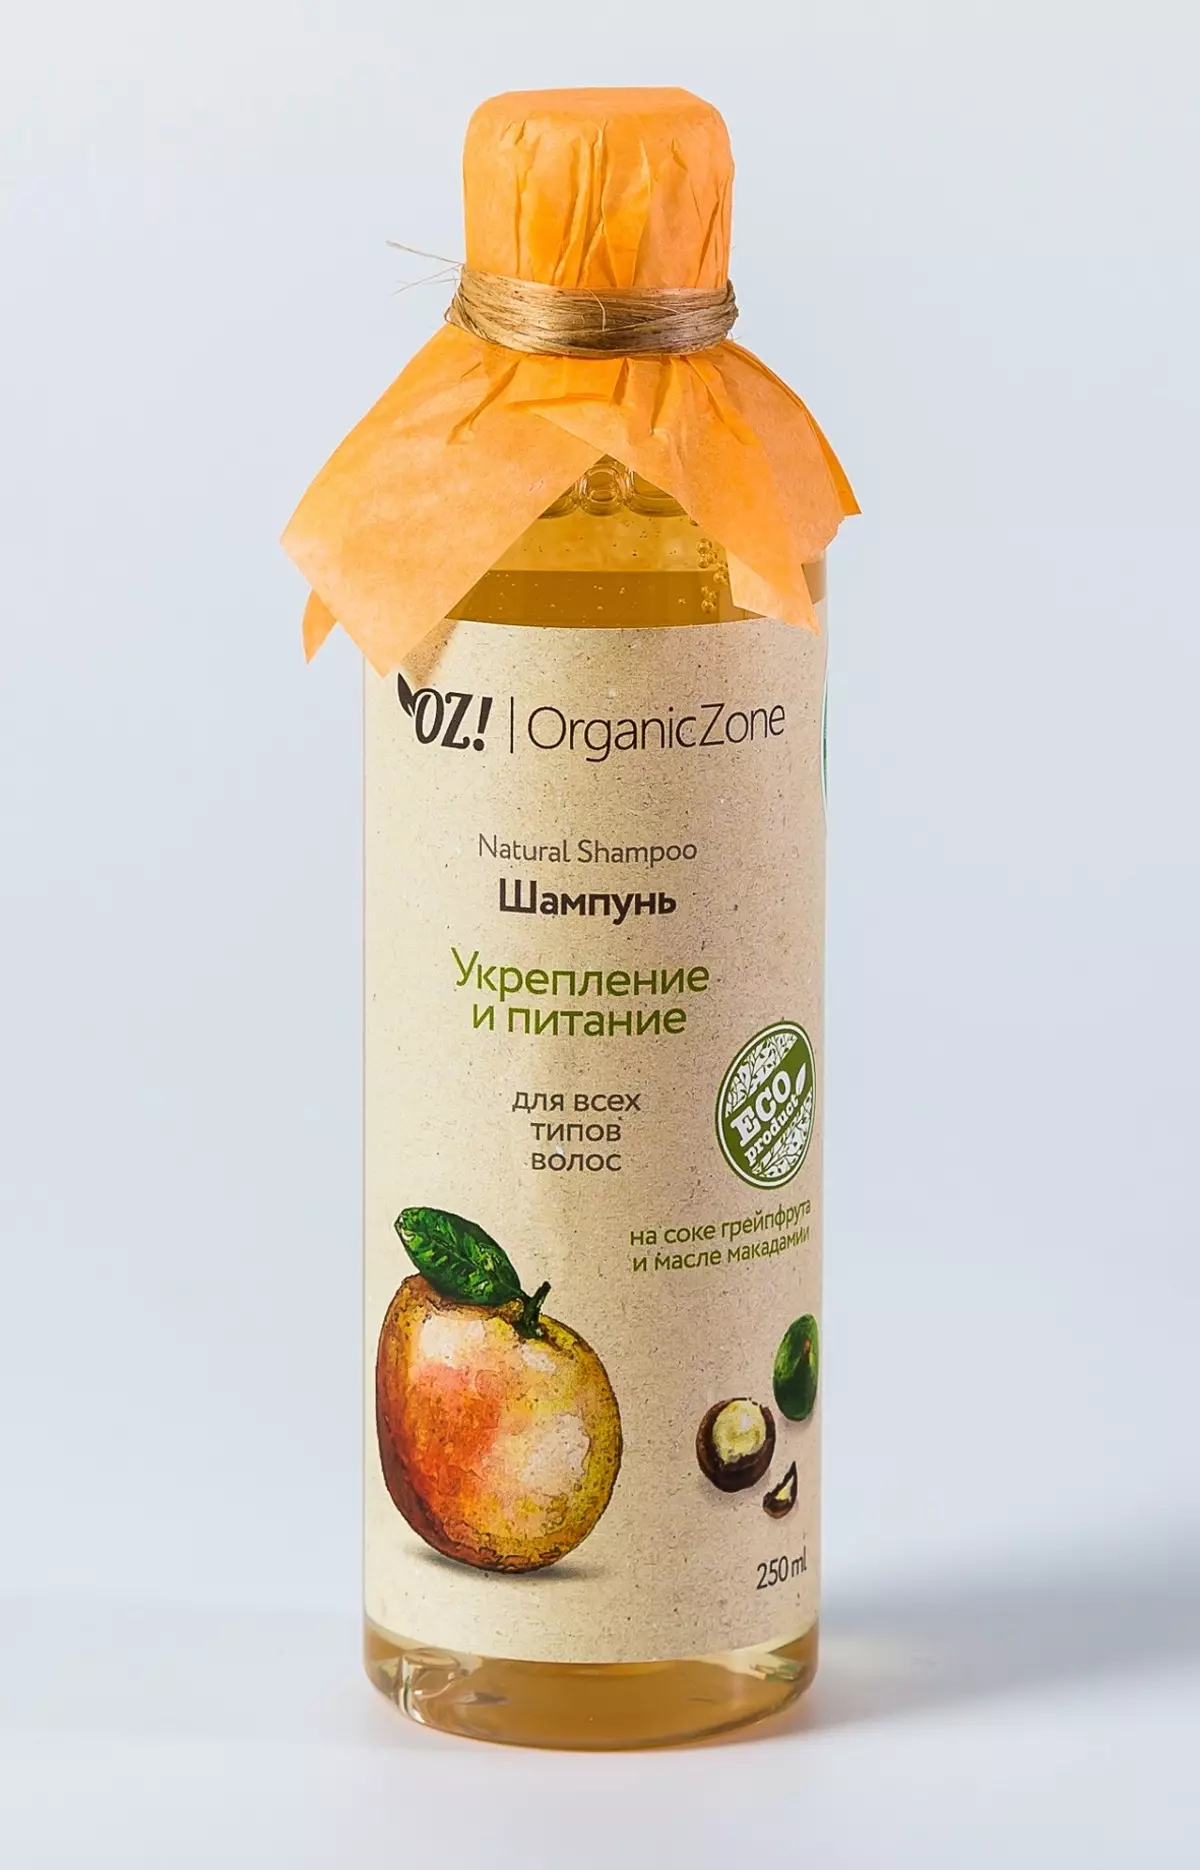 Kosmetyki OZ! OrganicaZone: Przegląd produktów, Plusy i minusy, Wybierz i recenzje 4764_14